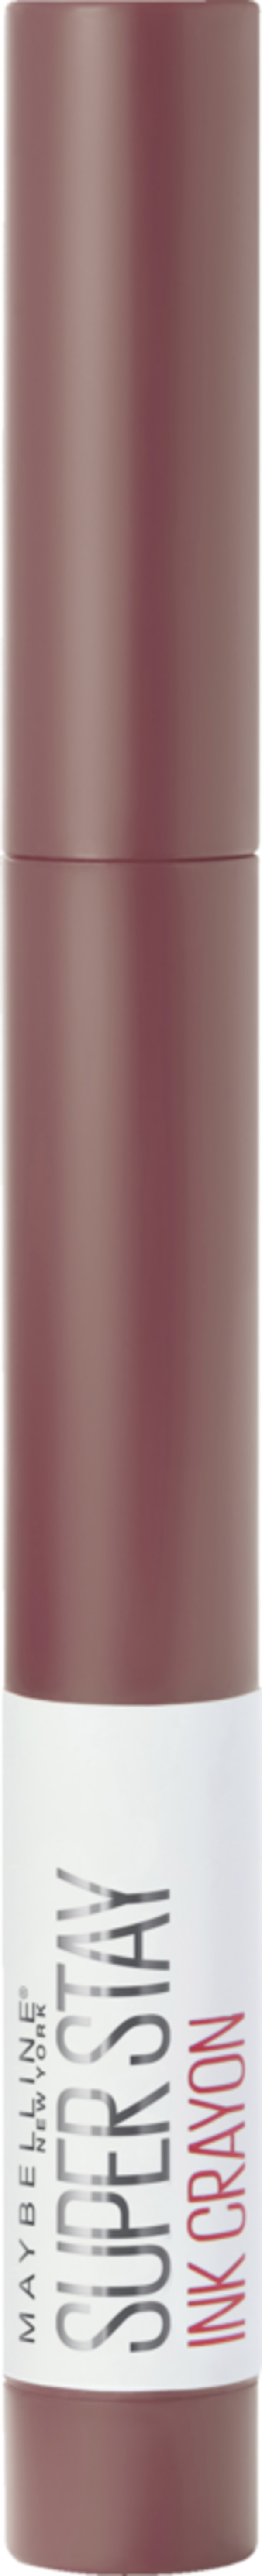 Bild 1 von Maybelline New York Lippenstift Super Stay Matte Ink Crayon 20 ENJOY T EUR/